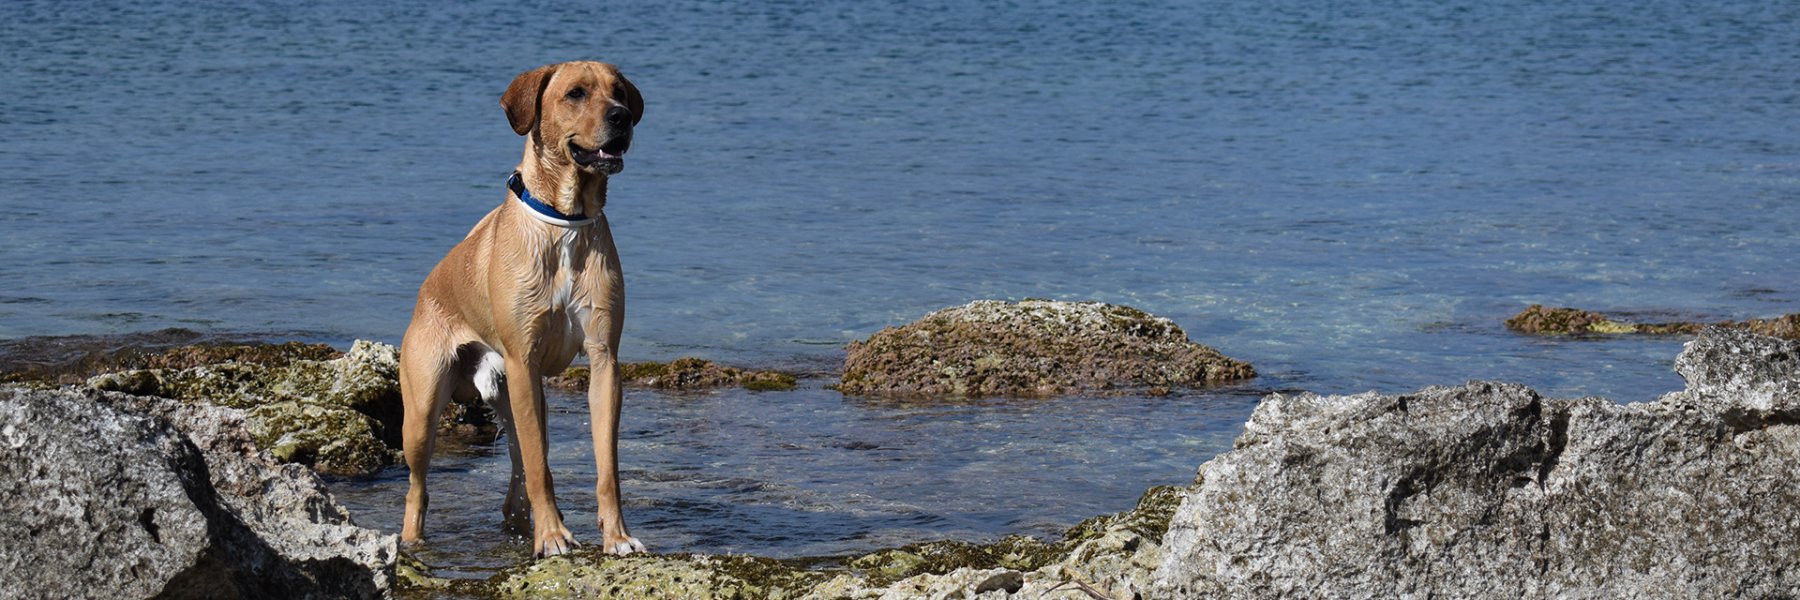 Ferienhausurlaub mit Hund auf Malta 